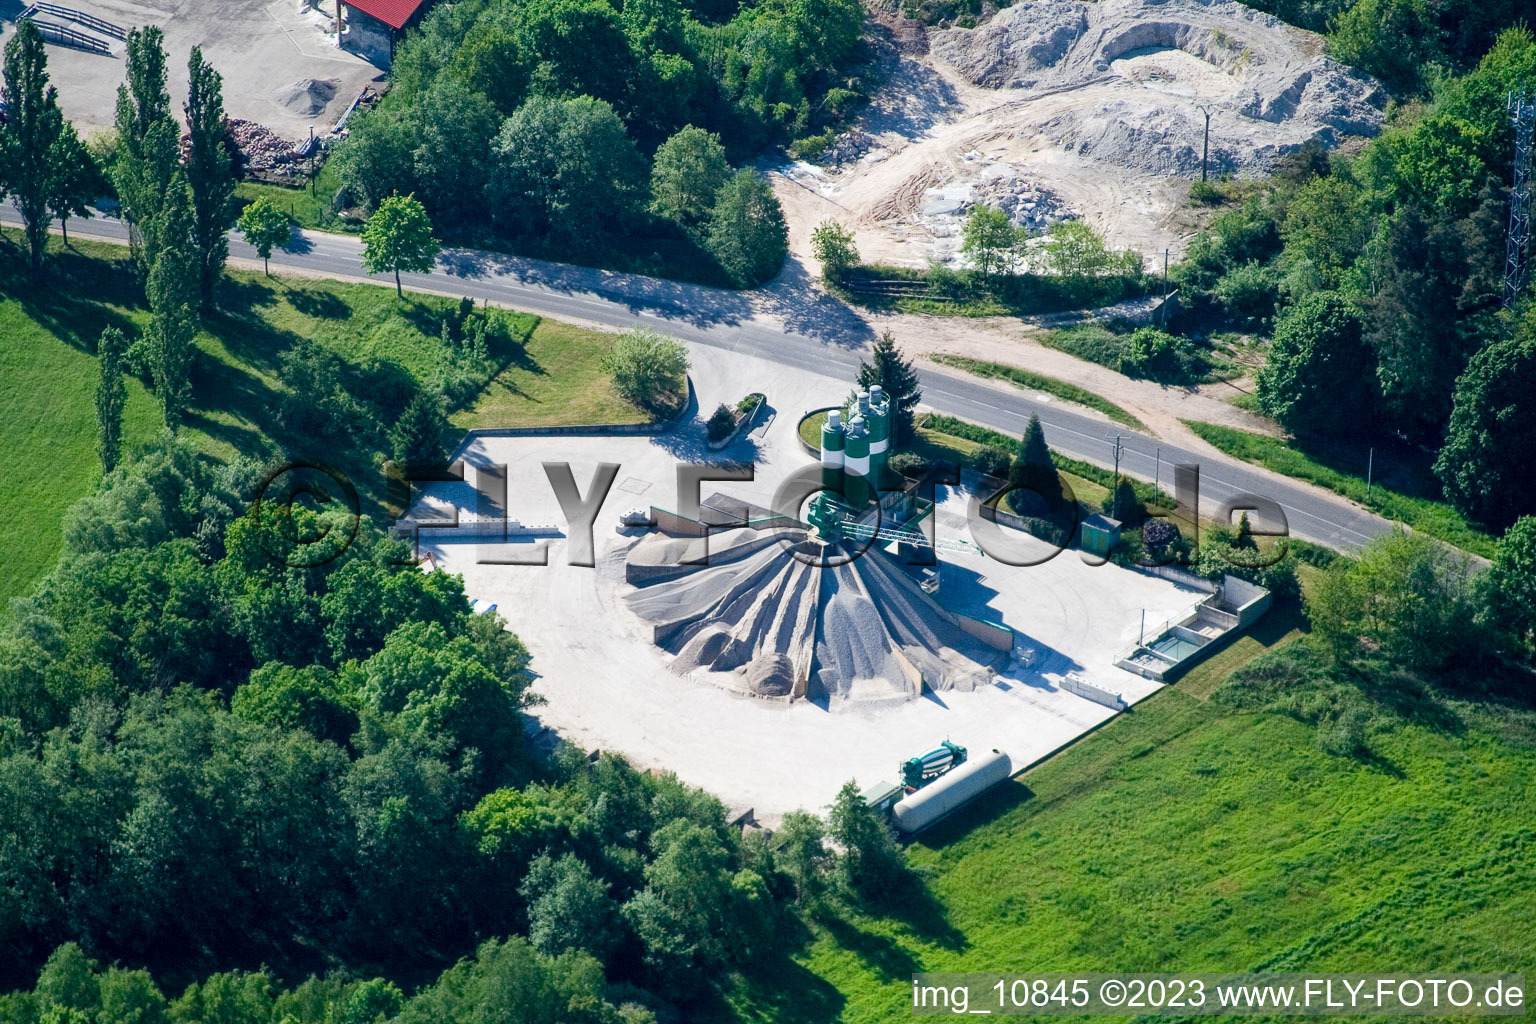 Gumbrechtshoffen dans le département Bas Rhin, France du point de vue du drone